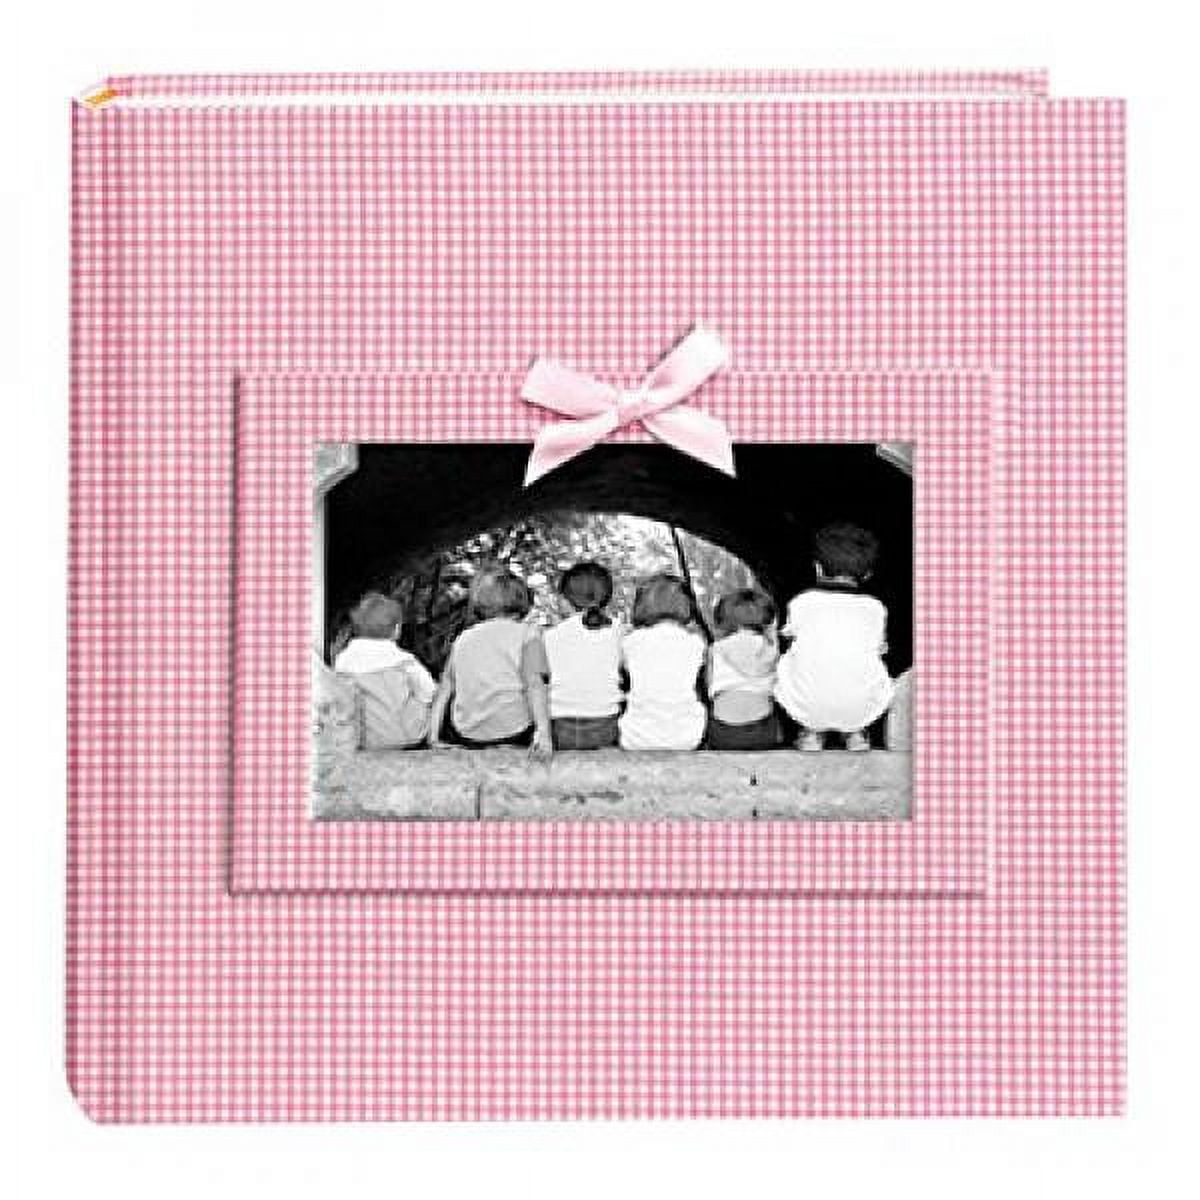 Buy Kara Baby album Pink - 200 Pictures in 11x15 cm here 